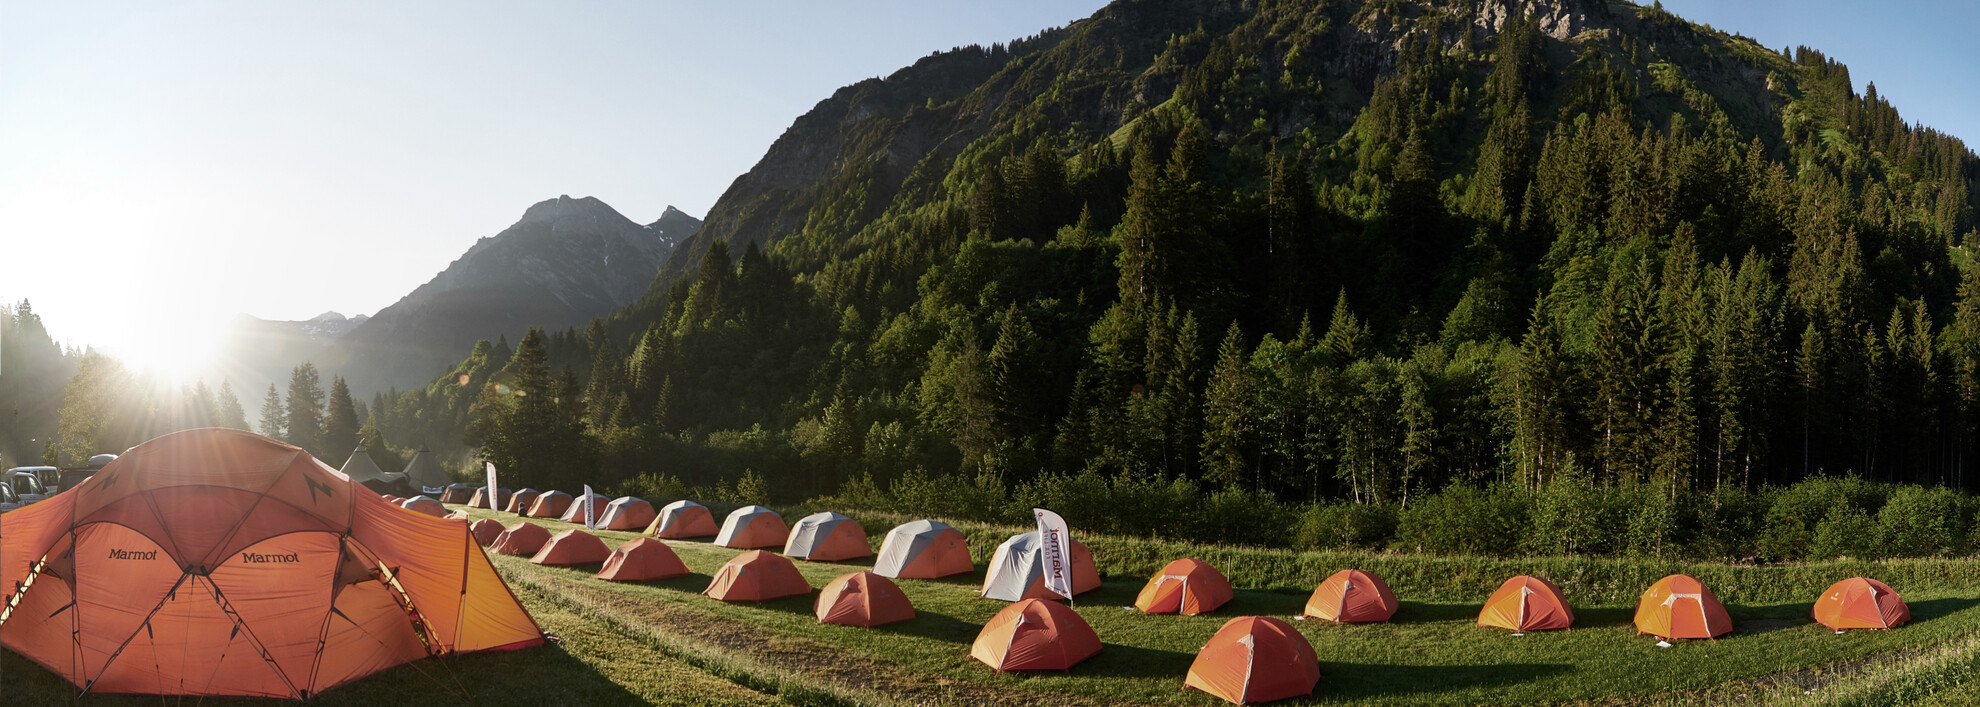 Campingplatz beim Marmot Family Camp | © Kleinwalsertal Tourismus eGen | Fotograf: Ben Wiesenfarth